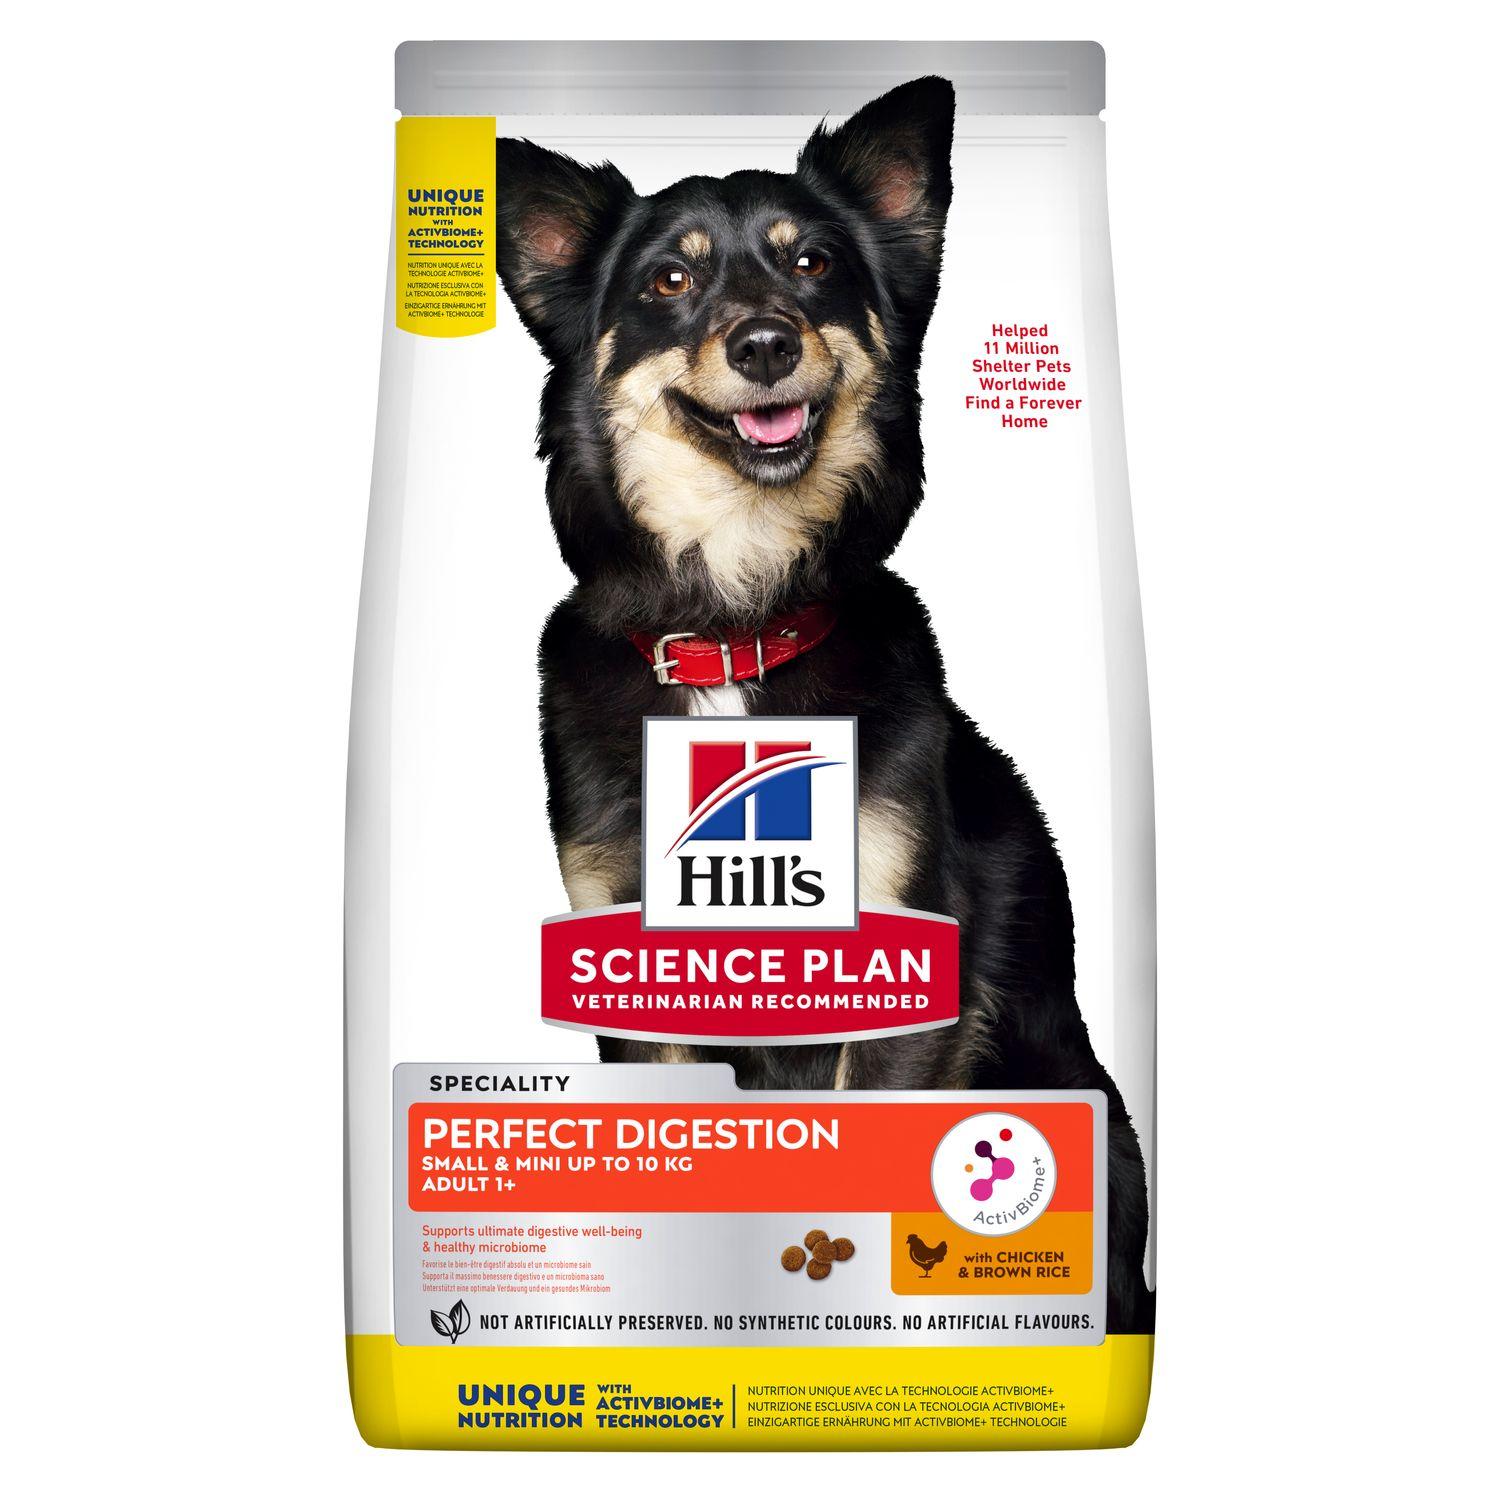 Hills Science Plan Сухой корм для взрослых собак малых и миниатюрных пород Идеальное пищеварение(Perfect Digestion) 605962 1,500 кг 55144, 15500100402